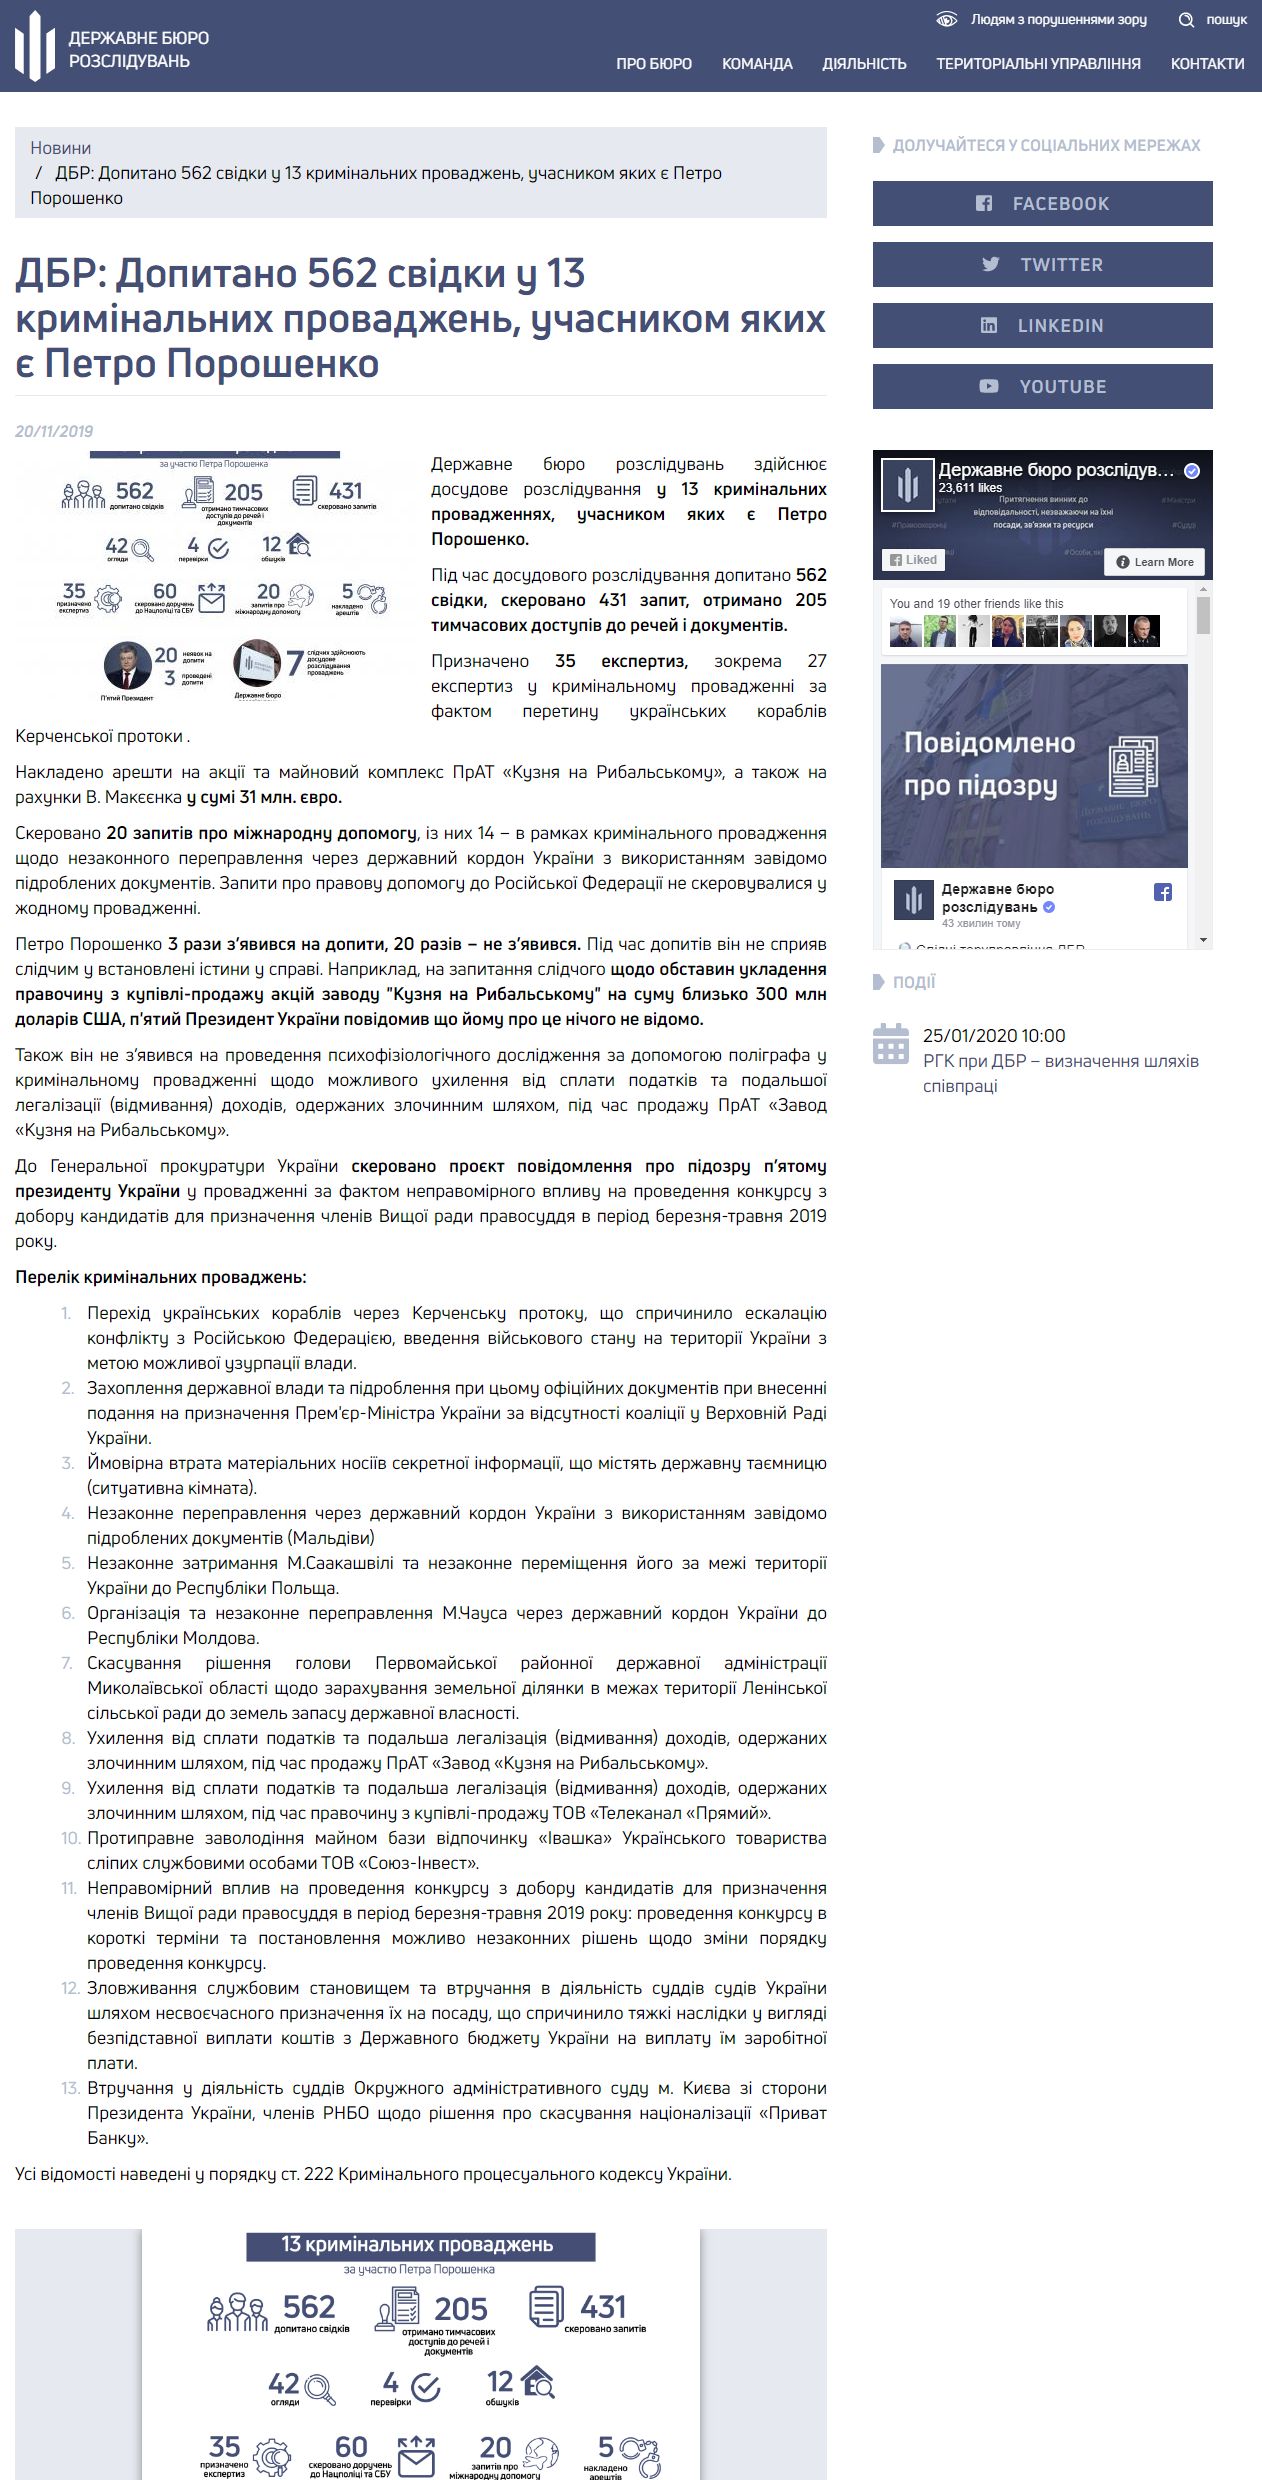 https://dbr.gov.ua/news/dbr-dopitano-562-svidki-u-13-kriminalnikh-provadzhen-uchasnikom-yakikh-e-petro-poroshenko#